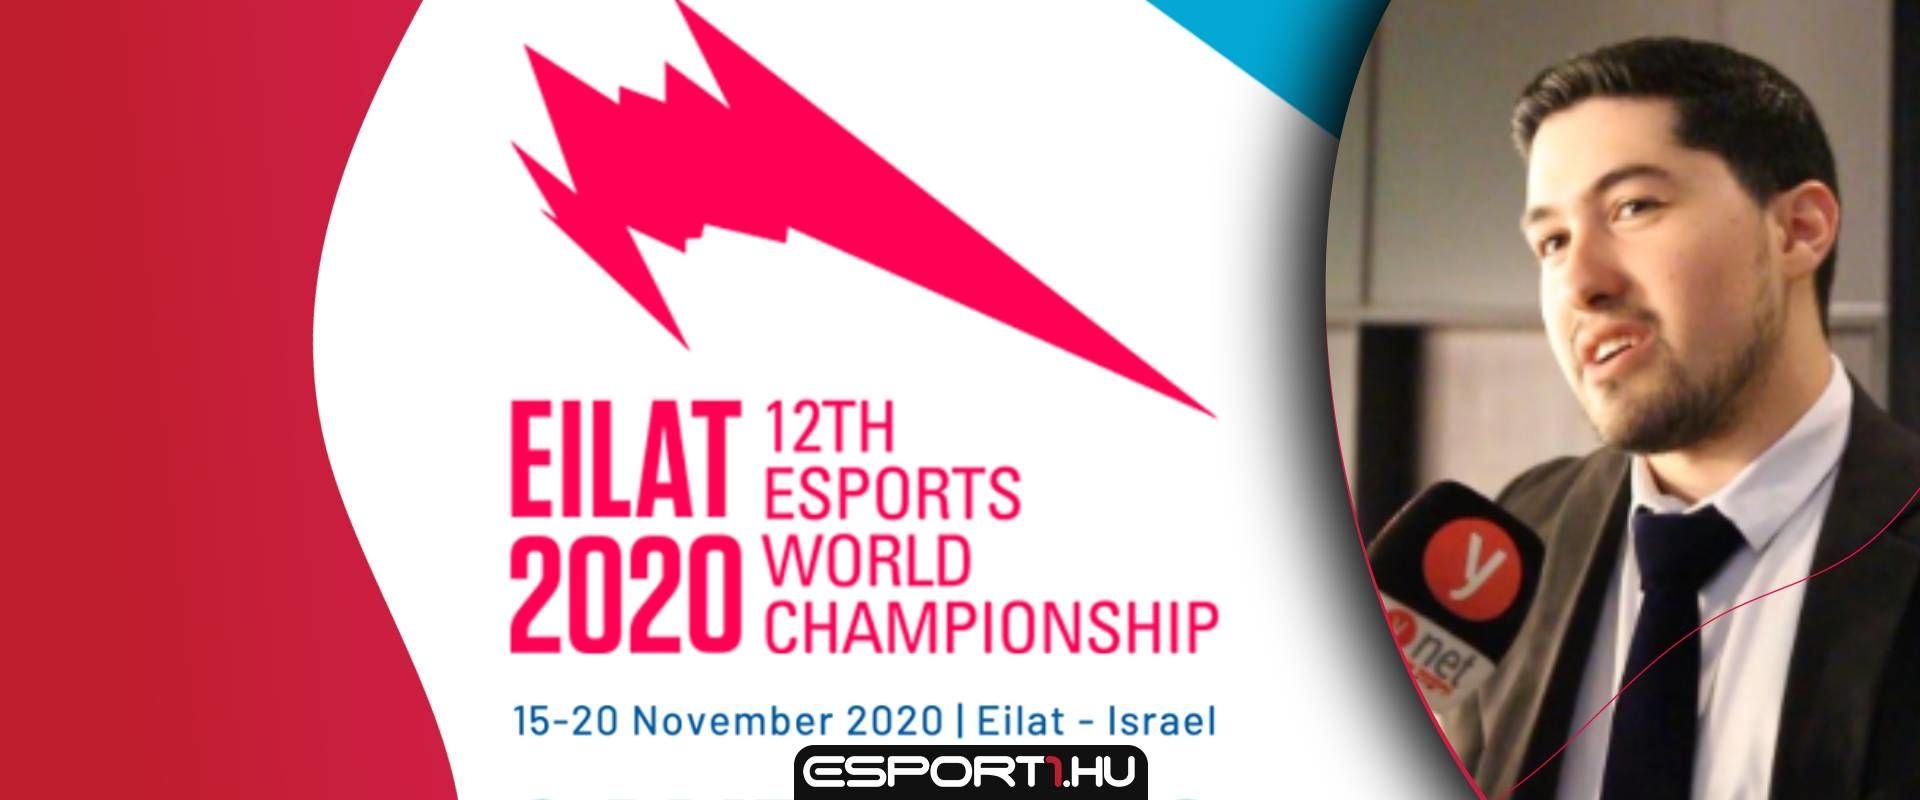 Izraelben rendezik a 12. e-sport világbajnokságot 2020-ban